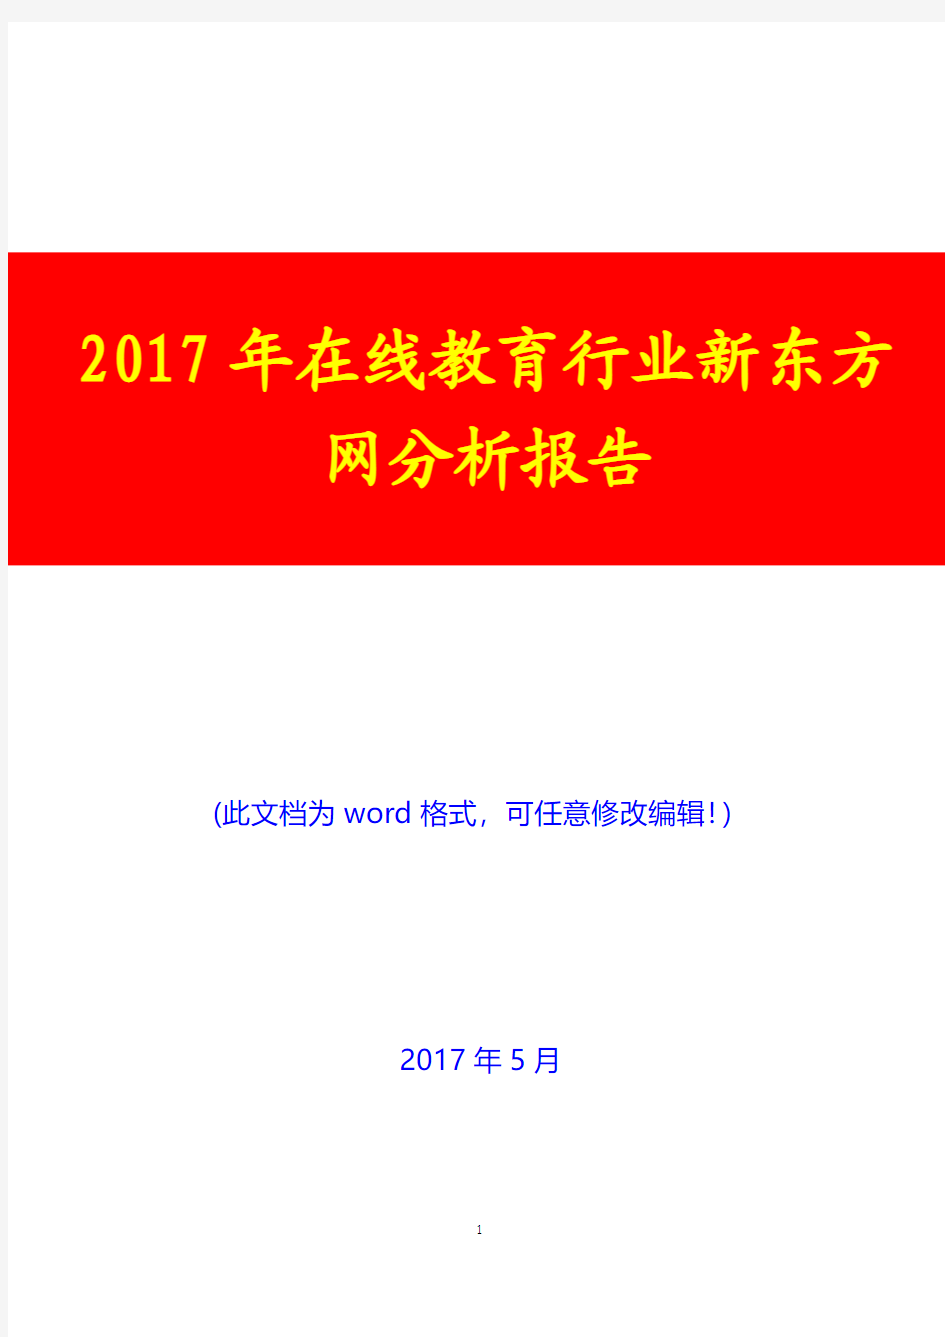 2017年在线教育行业新东方网分析报告